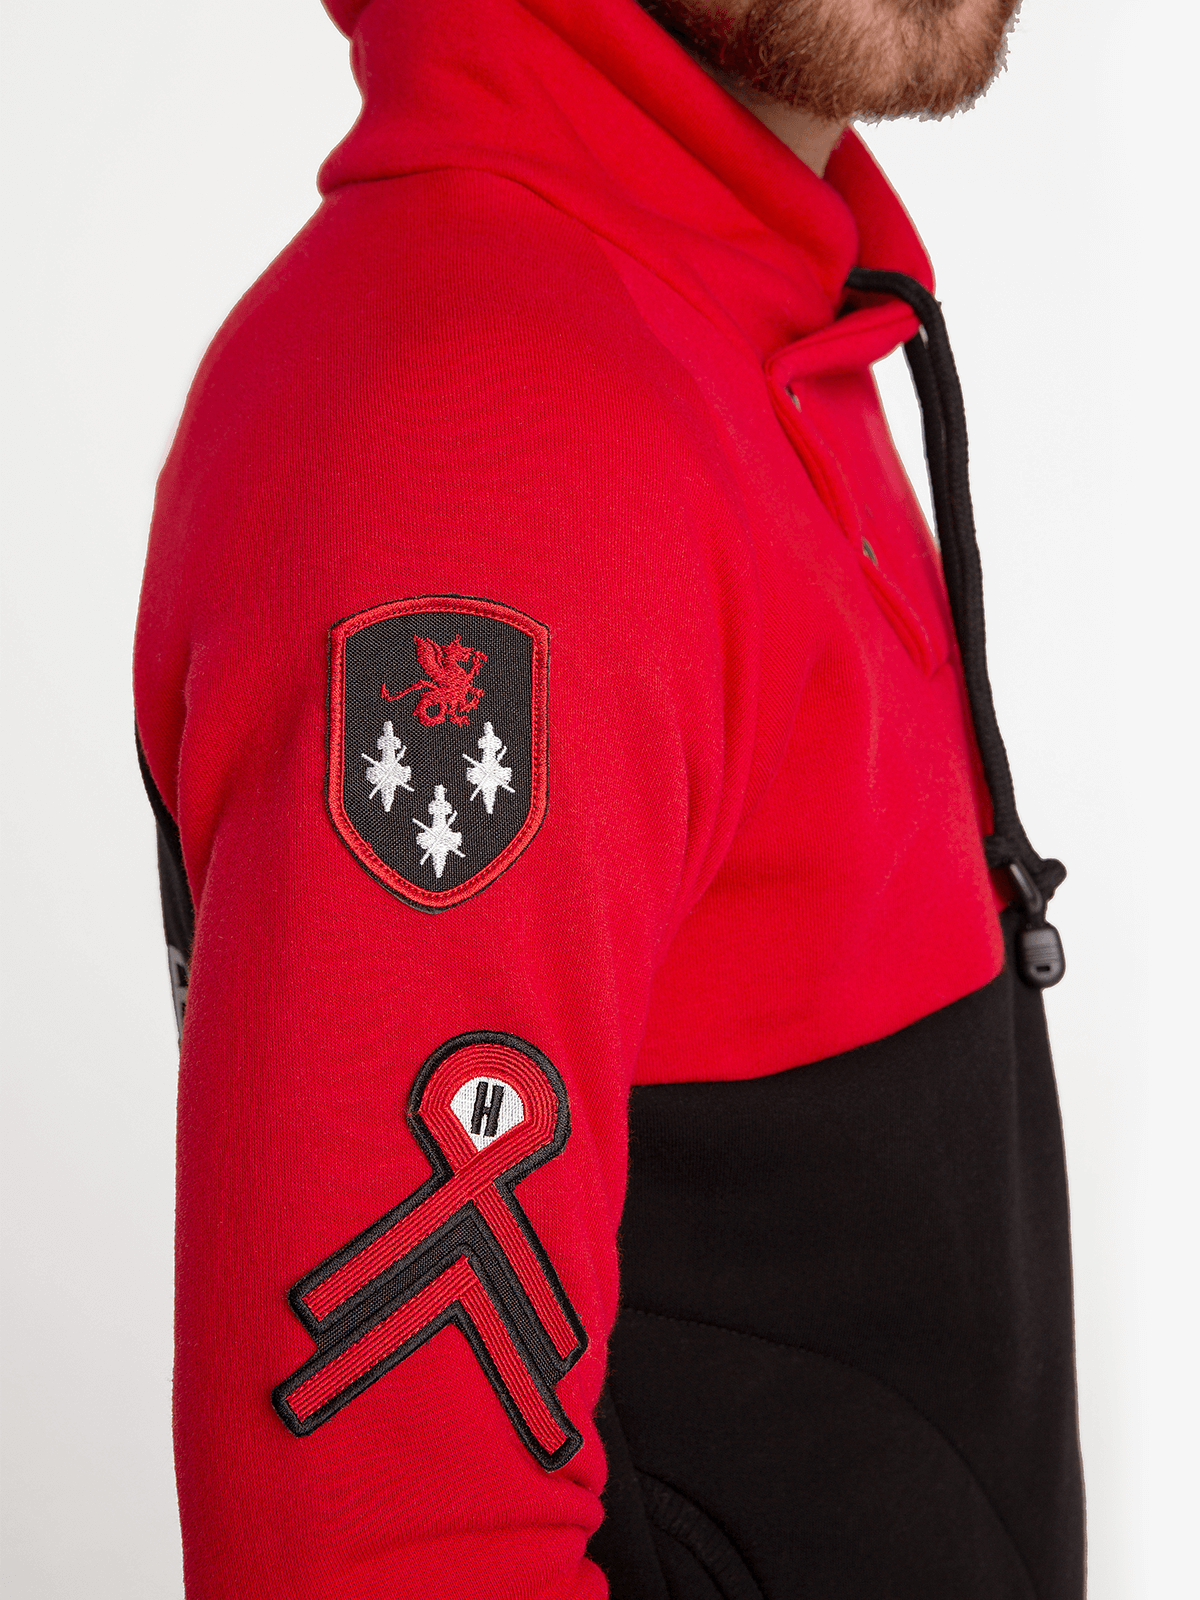 Women's Sweatshir 12 Brigade. Color red. 2.